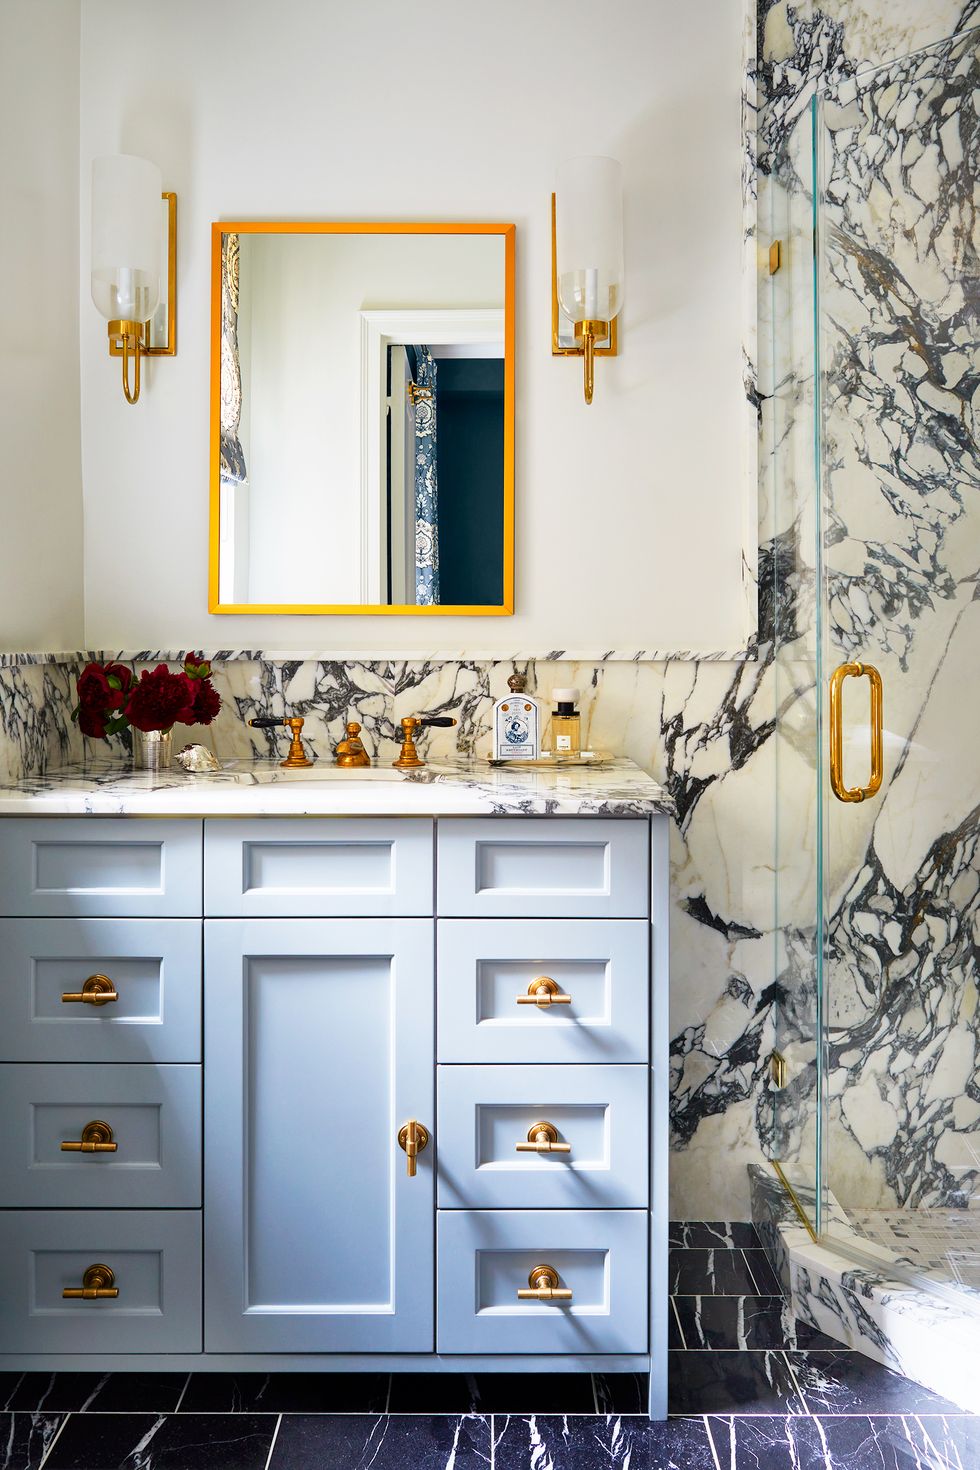 NTK nội thất đã làm nổi bật đường vân màu xanh lam đậm trên bề mặt đá cẩm thạch với màu xanh lam nhạt trên tủ vanity, kết hợp các chi tiết mạ vàng đồng sang chảnh.